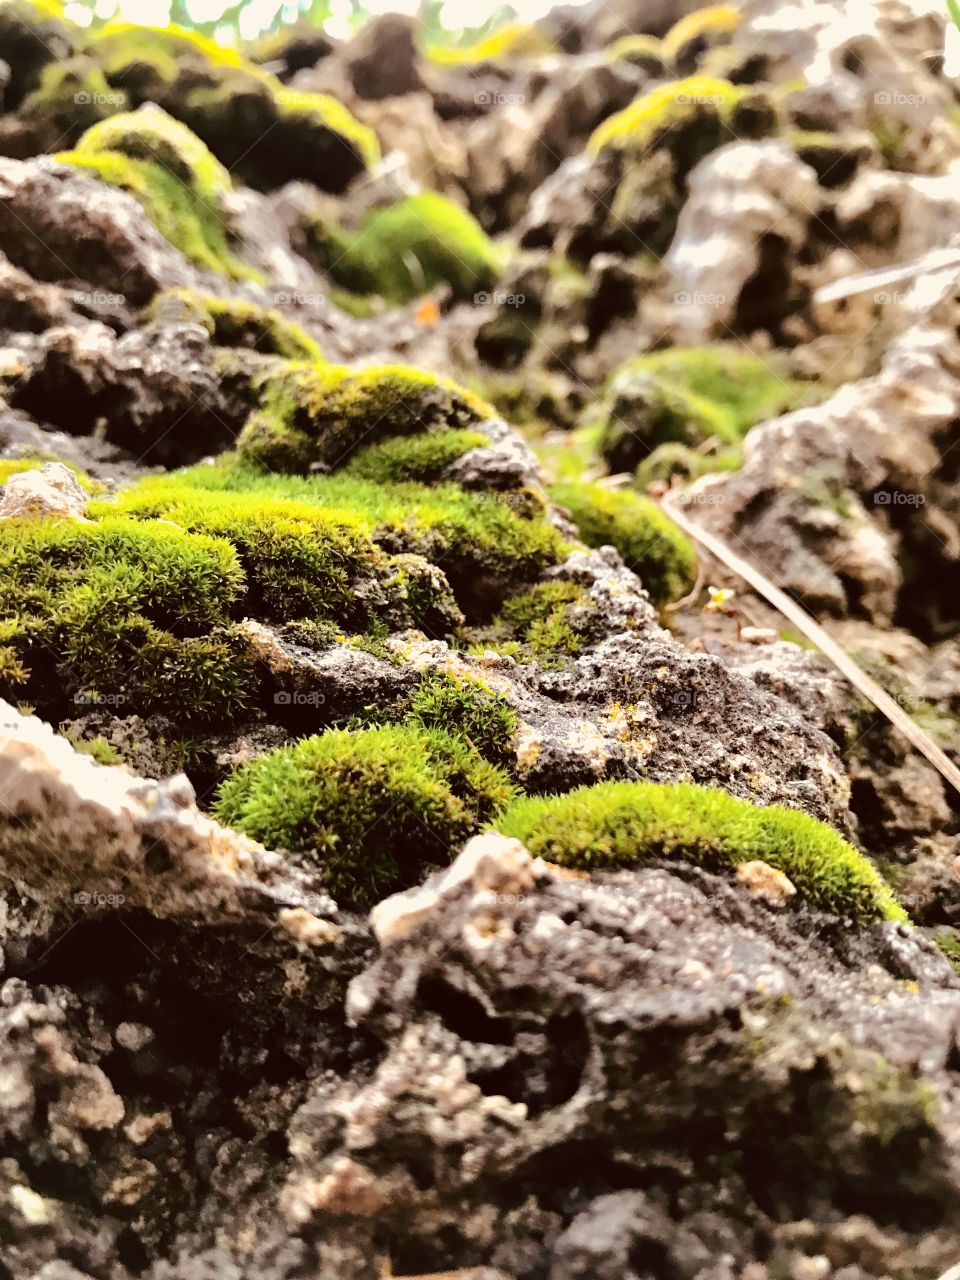 Better moss rocks